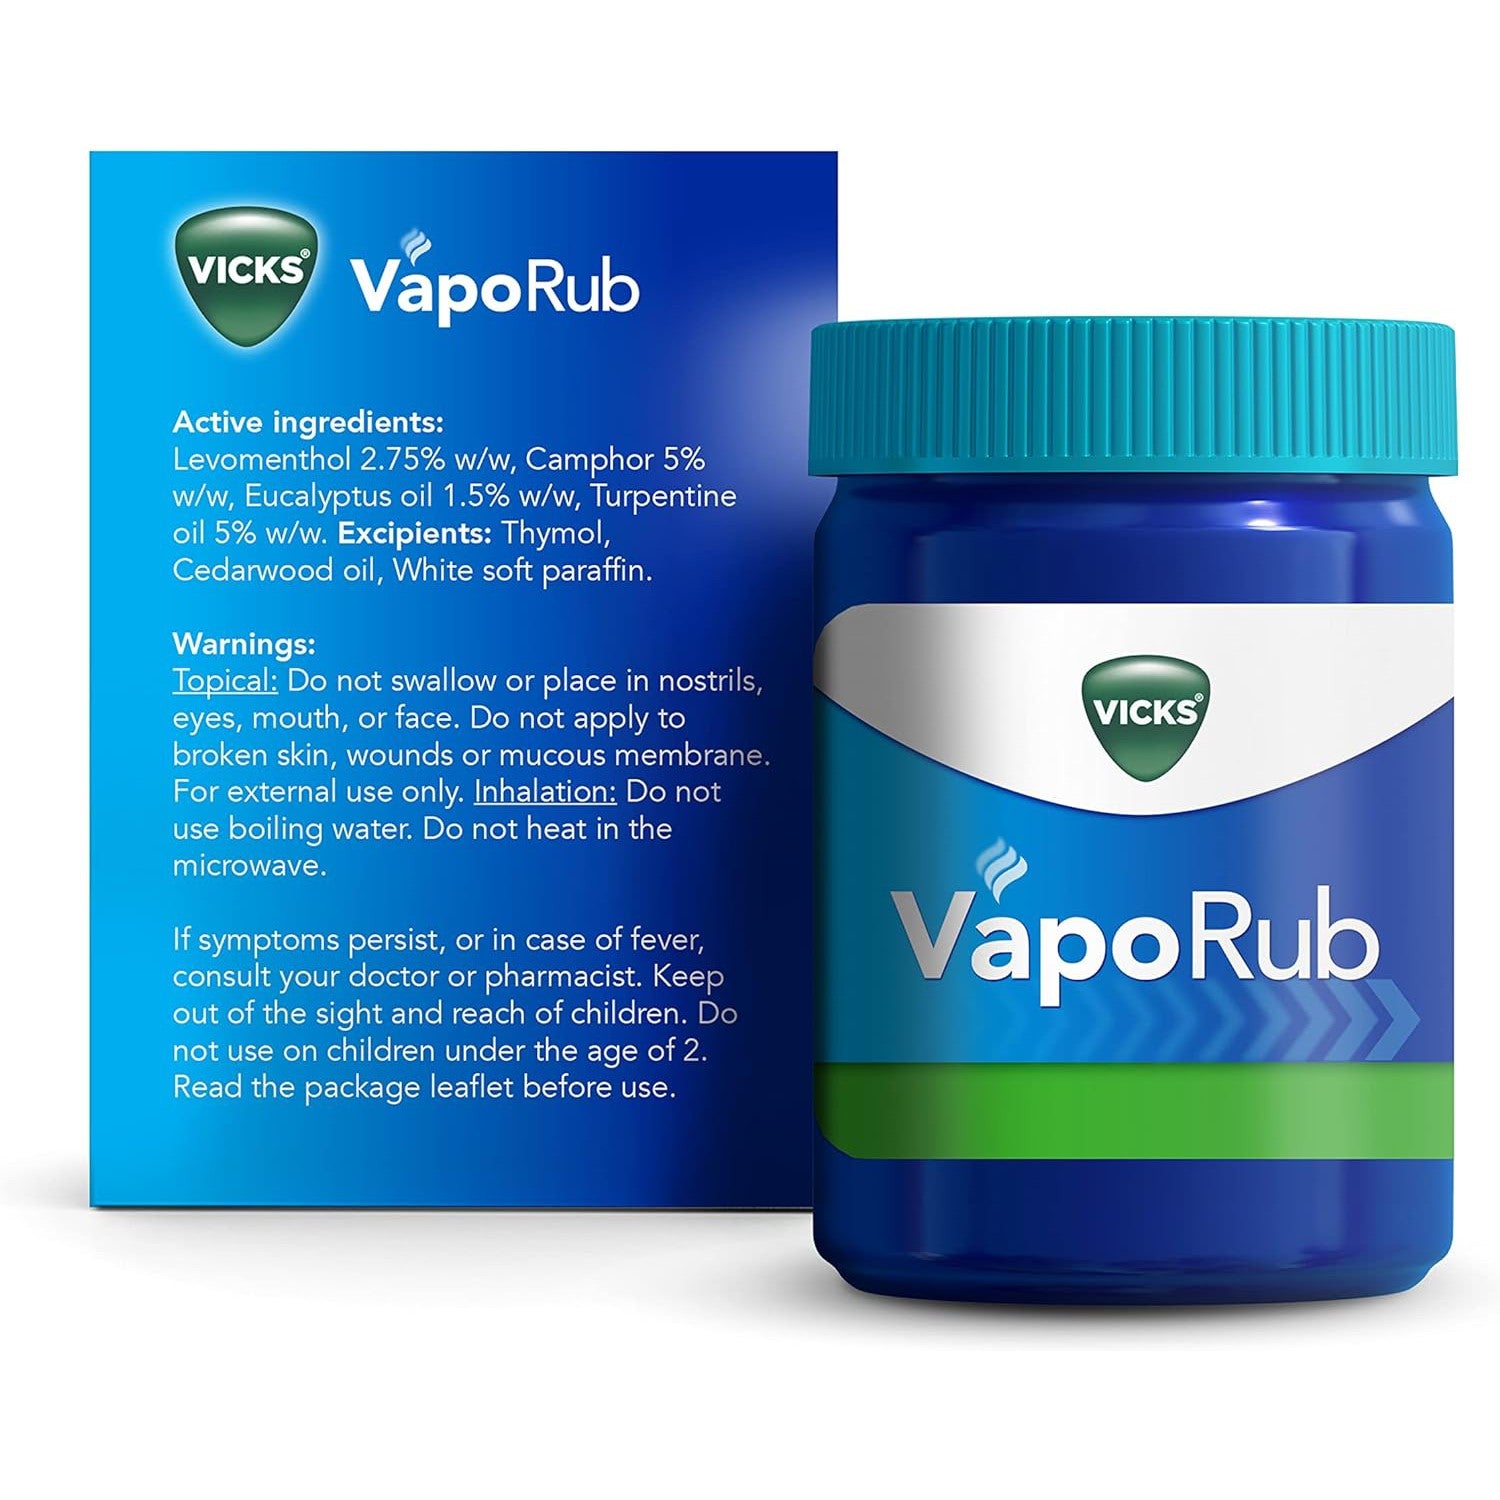 Vicks VapoRub 100g , Relief Of Cough Cold & Flu Like Symptoms